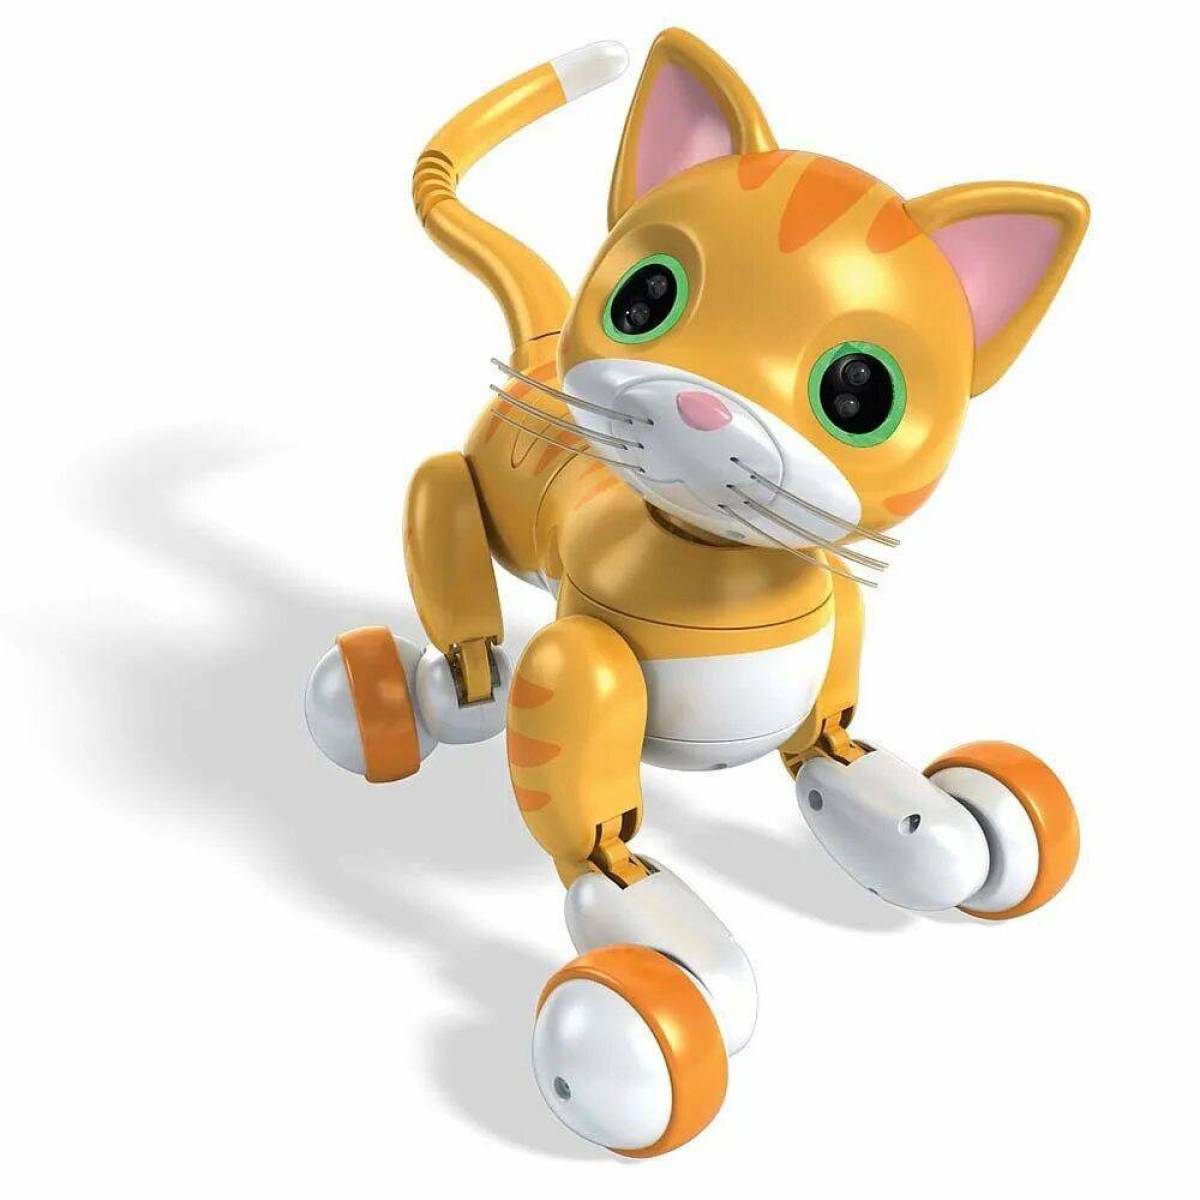 Игры робот кошка. Робот-кошка zoomer Kitty. Интерактивная игрушка zoomer Kitty. Кот робот игрушка zoomer Kitty. Интерактивная игрушка робот zoomer Kitty робот-котенок.